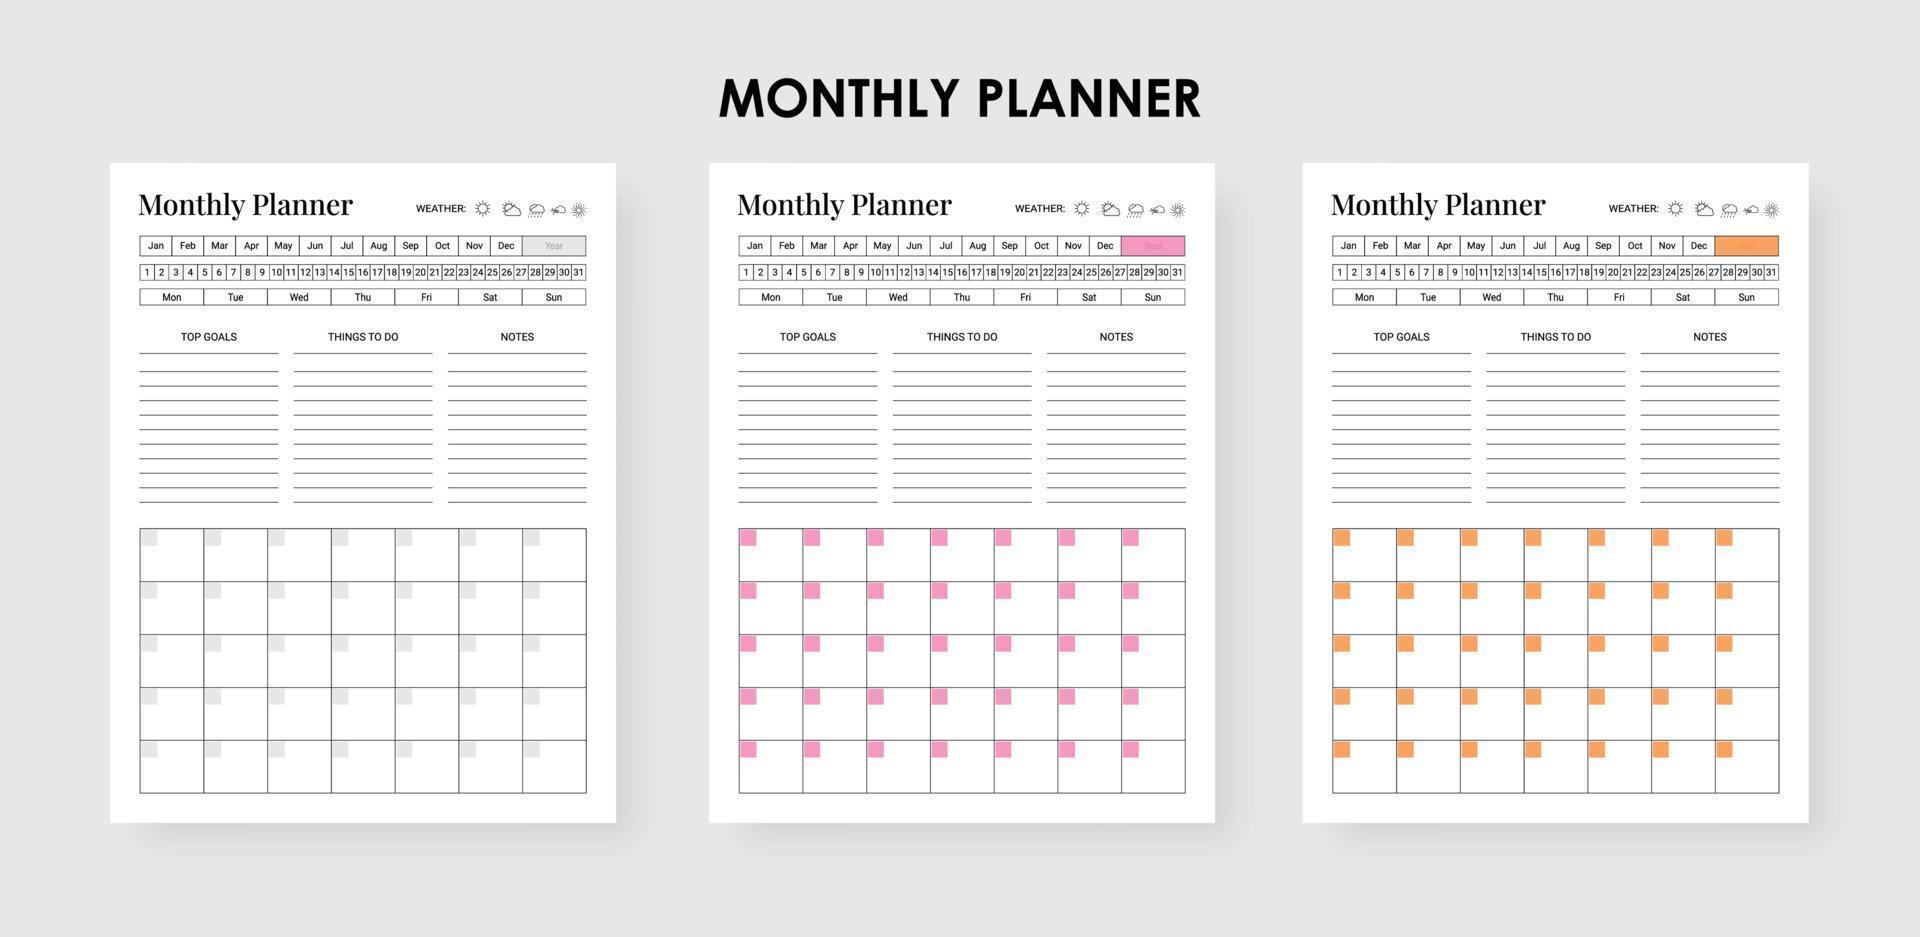 dagligen varje vecka en gång i månaden planerare med checklista logotyp bok vektor